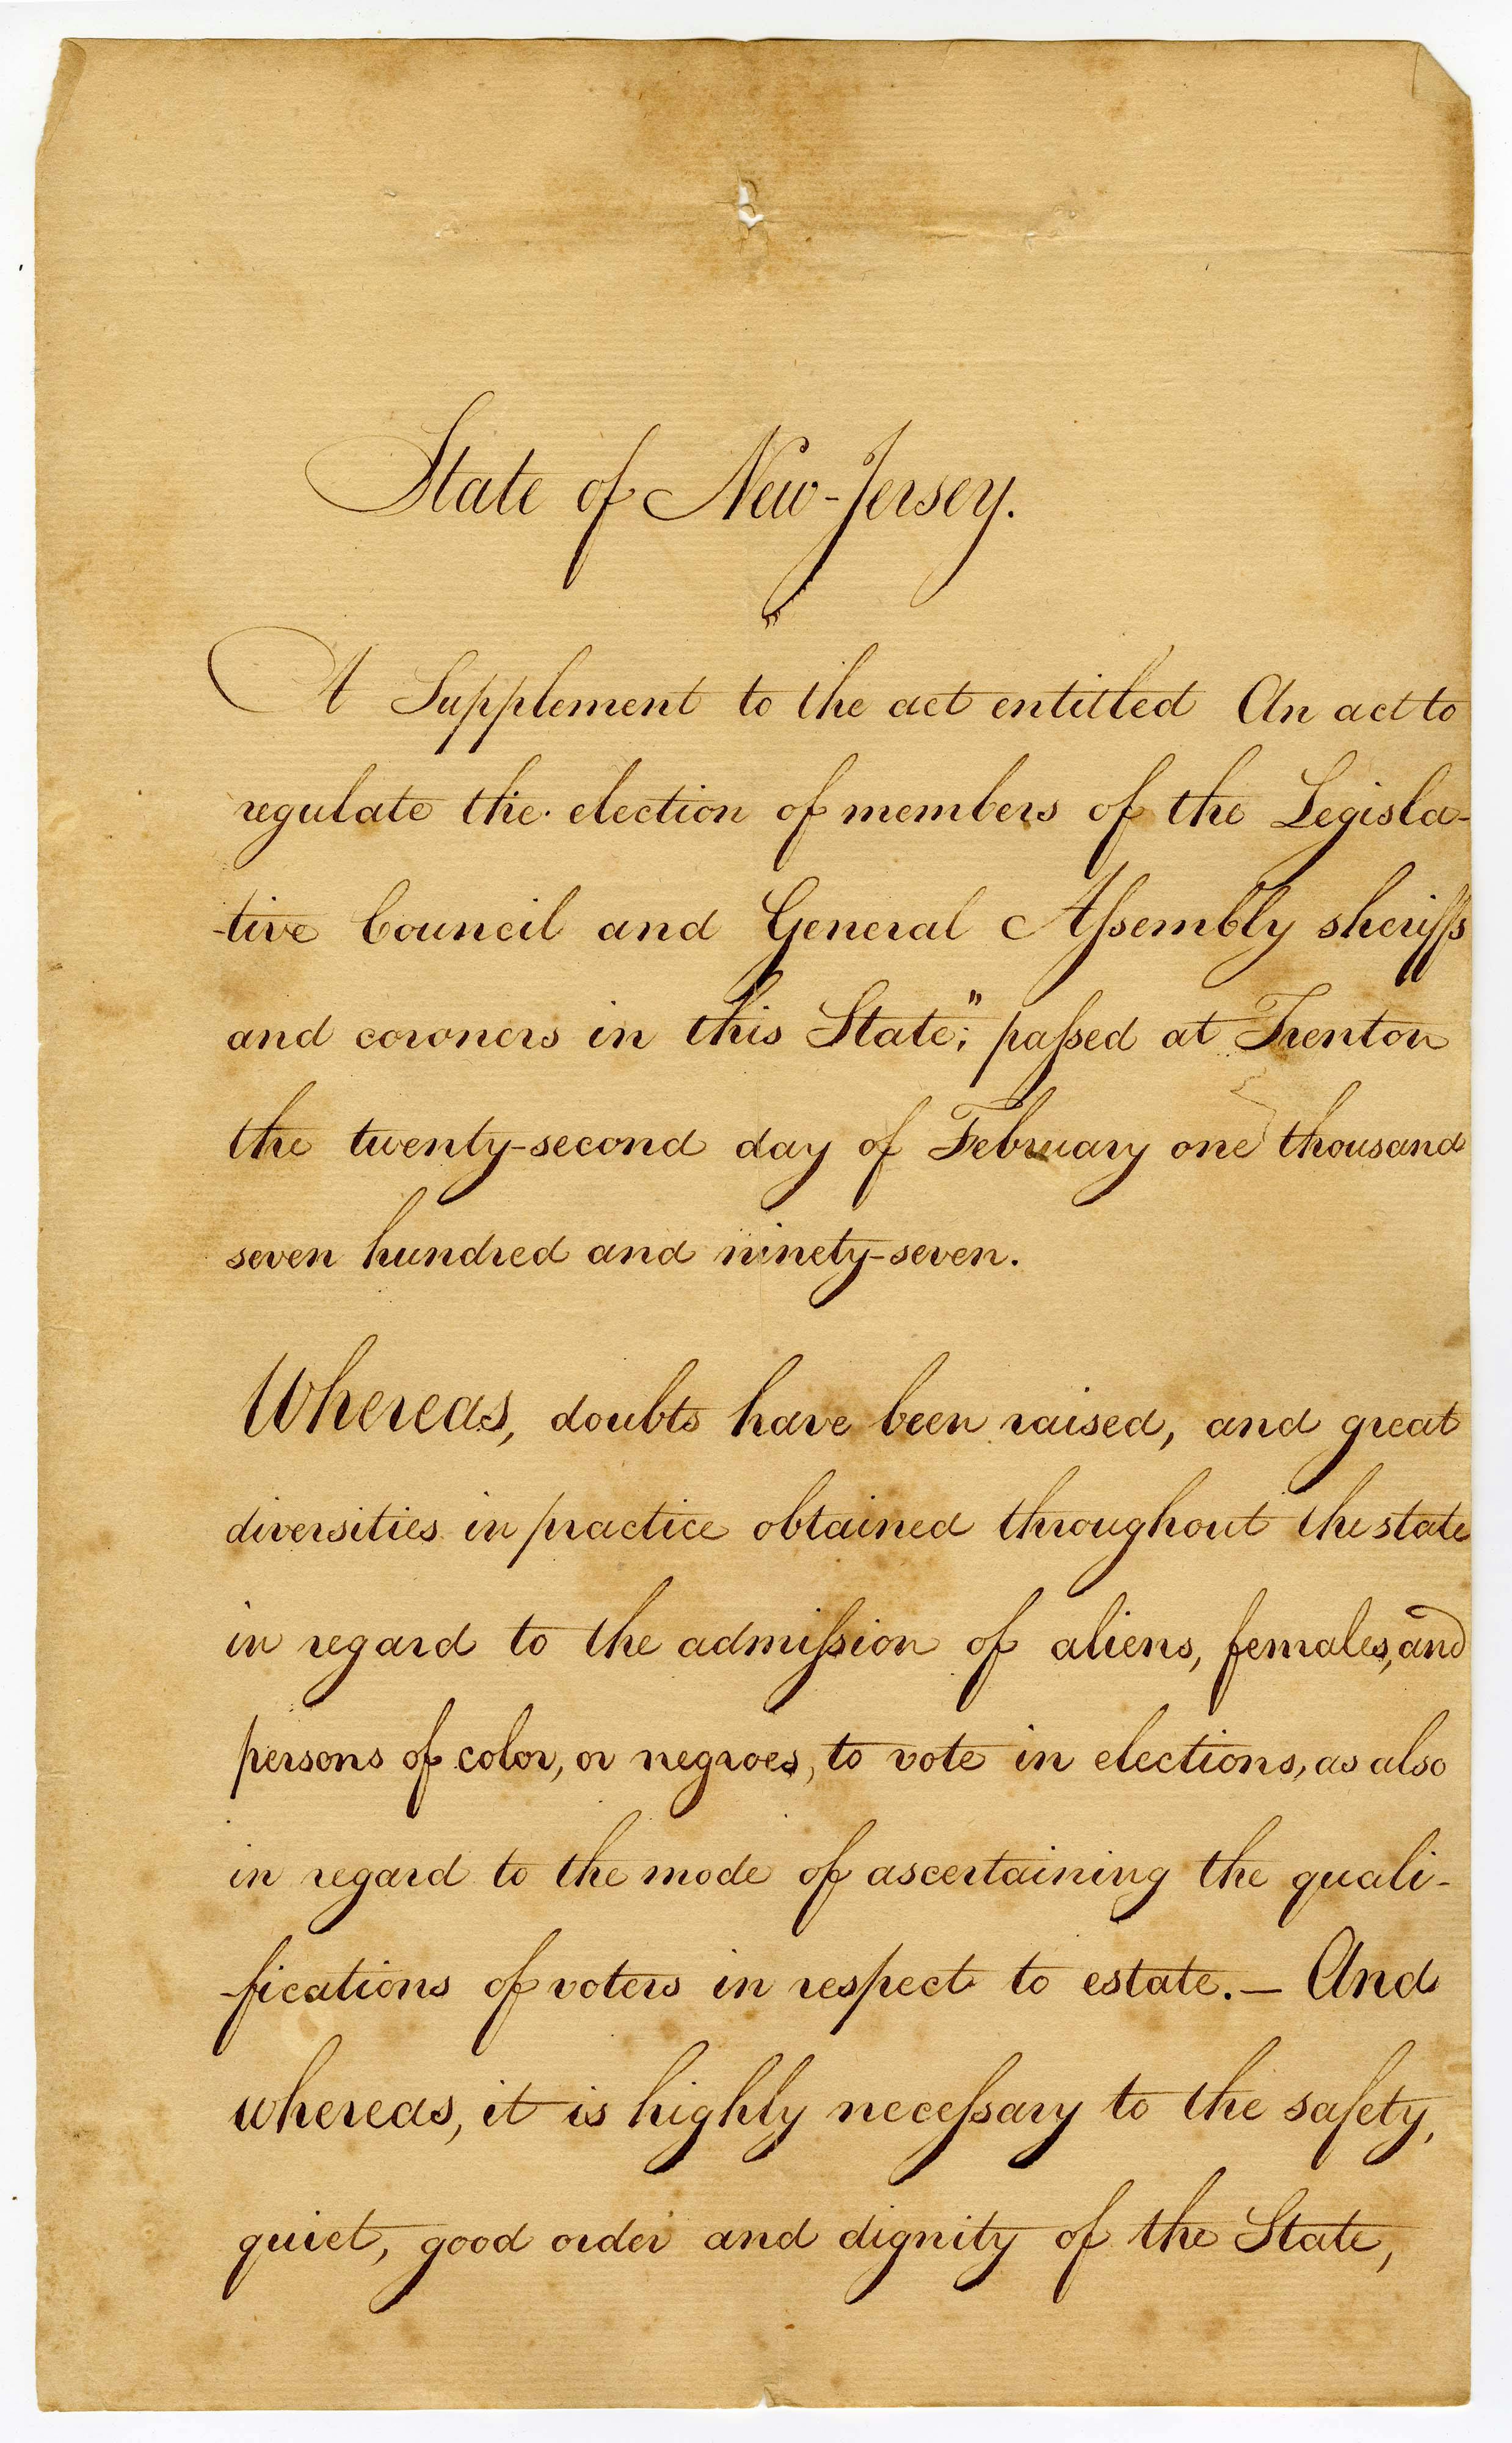 Scan of an 1807 statute.